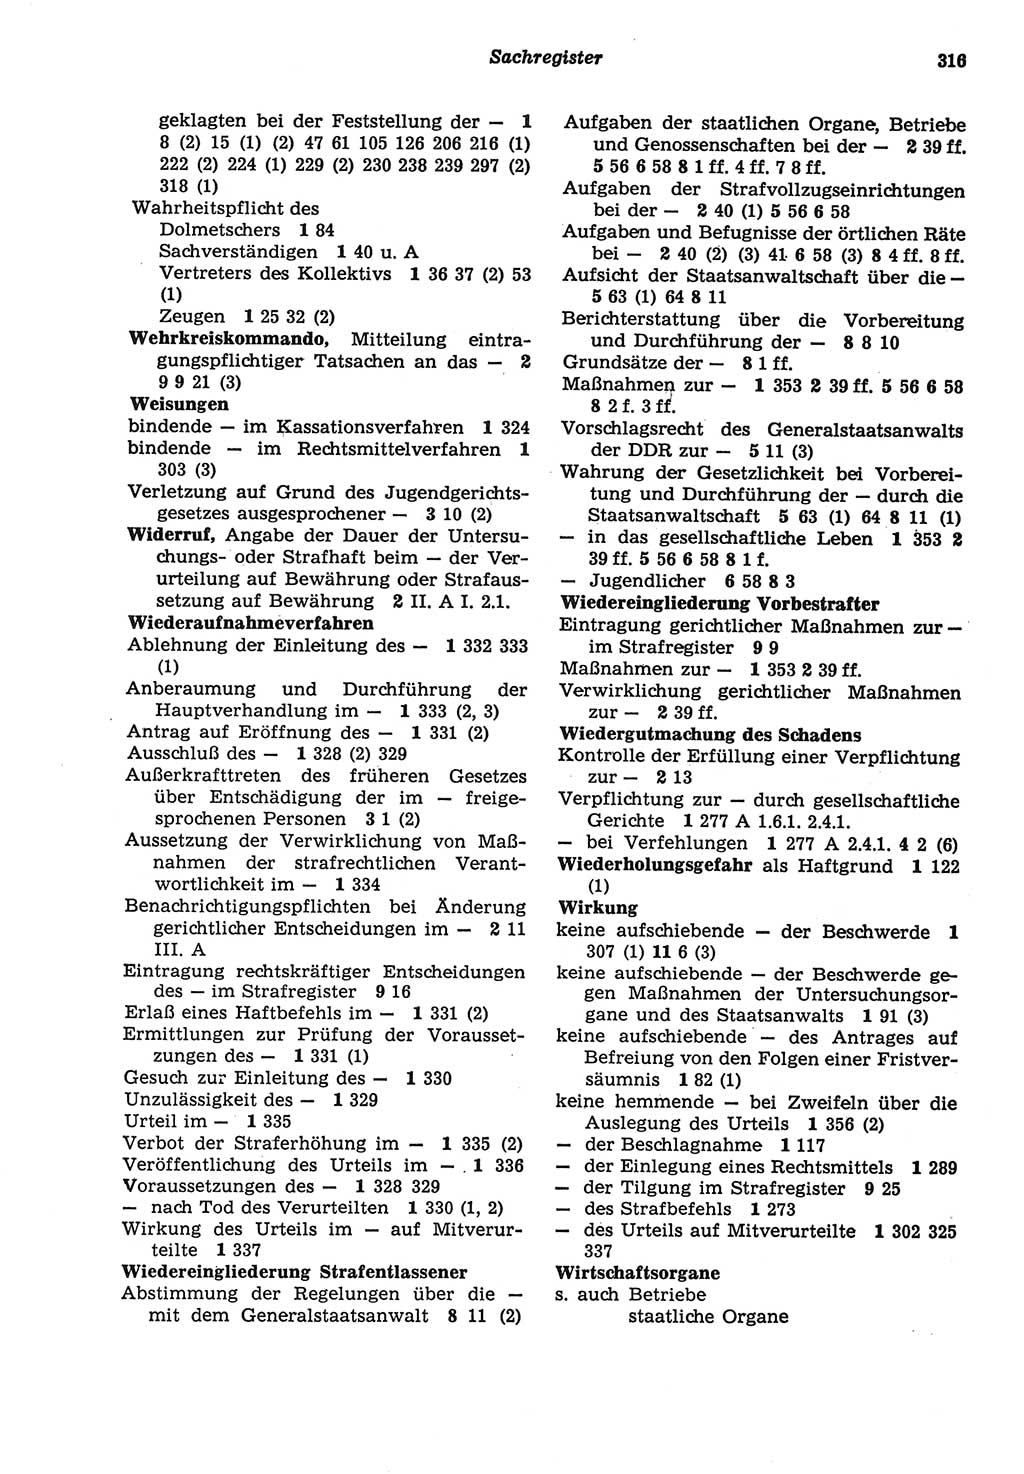 Strafprozeßordnung (StPO) der Deutschen Demokratischen Republik (DDR) sowie angrenzende Gesetze und Bestimmungen 1977, Seite 316 (StPO DDR Ges. Best. 1977, S. 316)